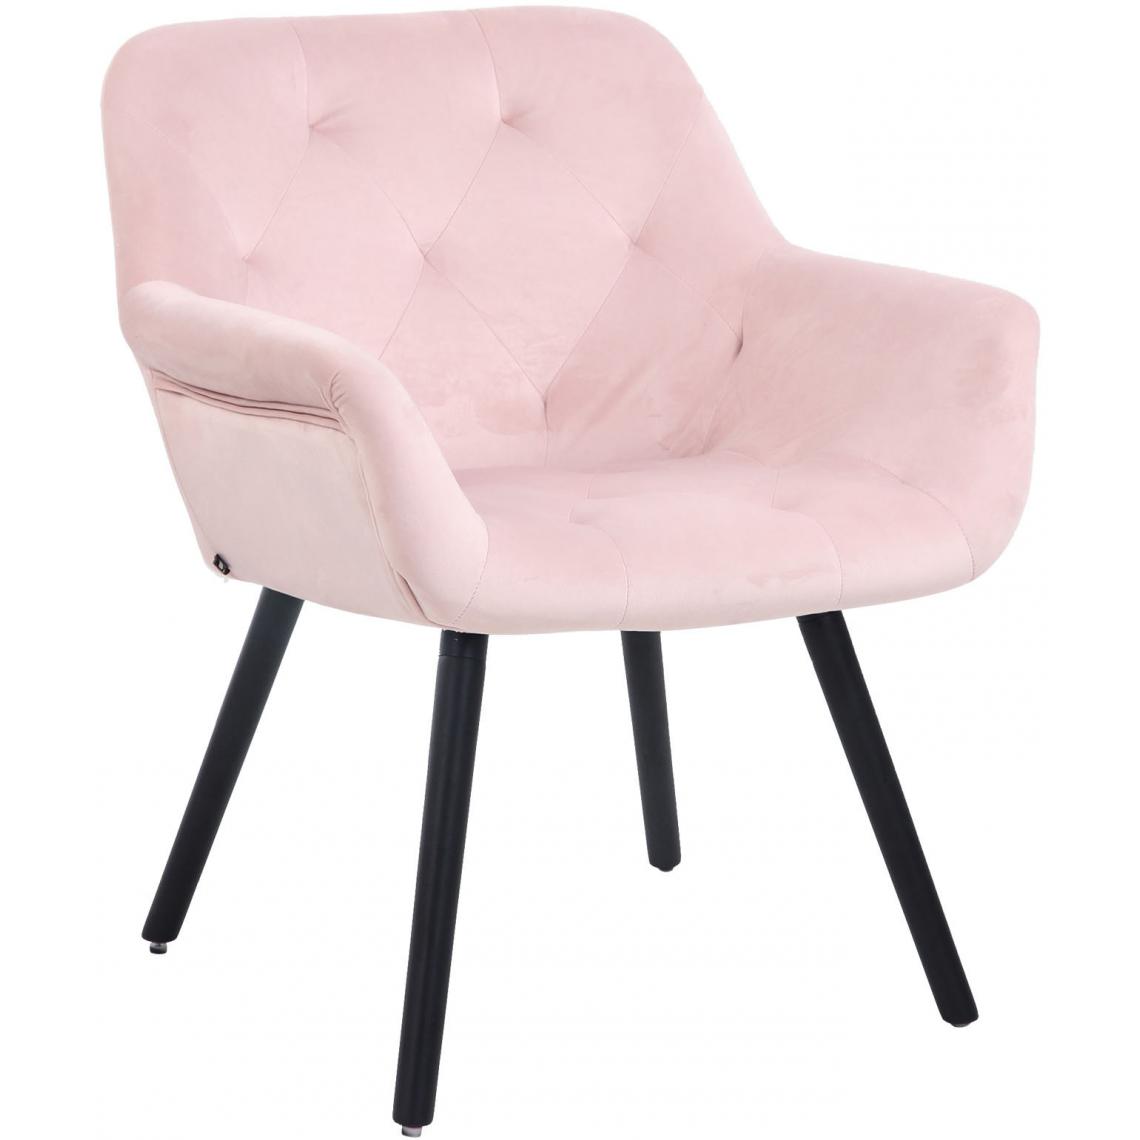 Icaverne - Moderne Chaise de salle à manger reference Khartoum velours noir couleur rose - Chaises